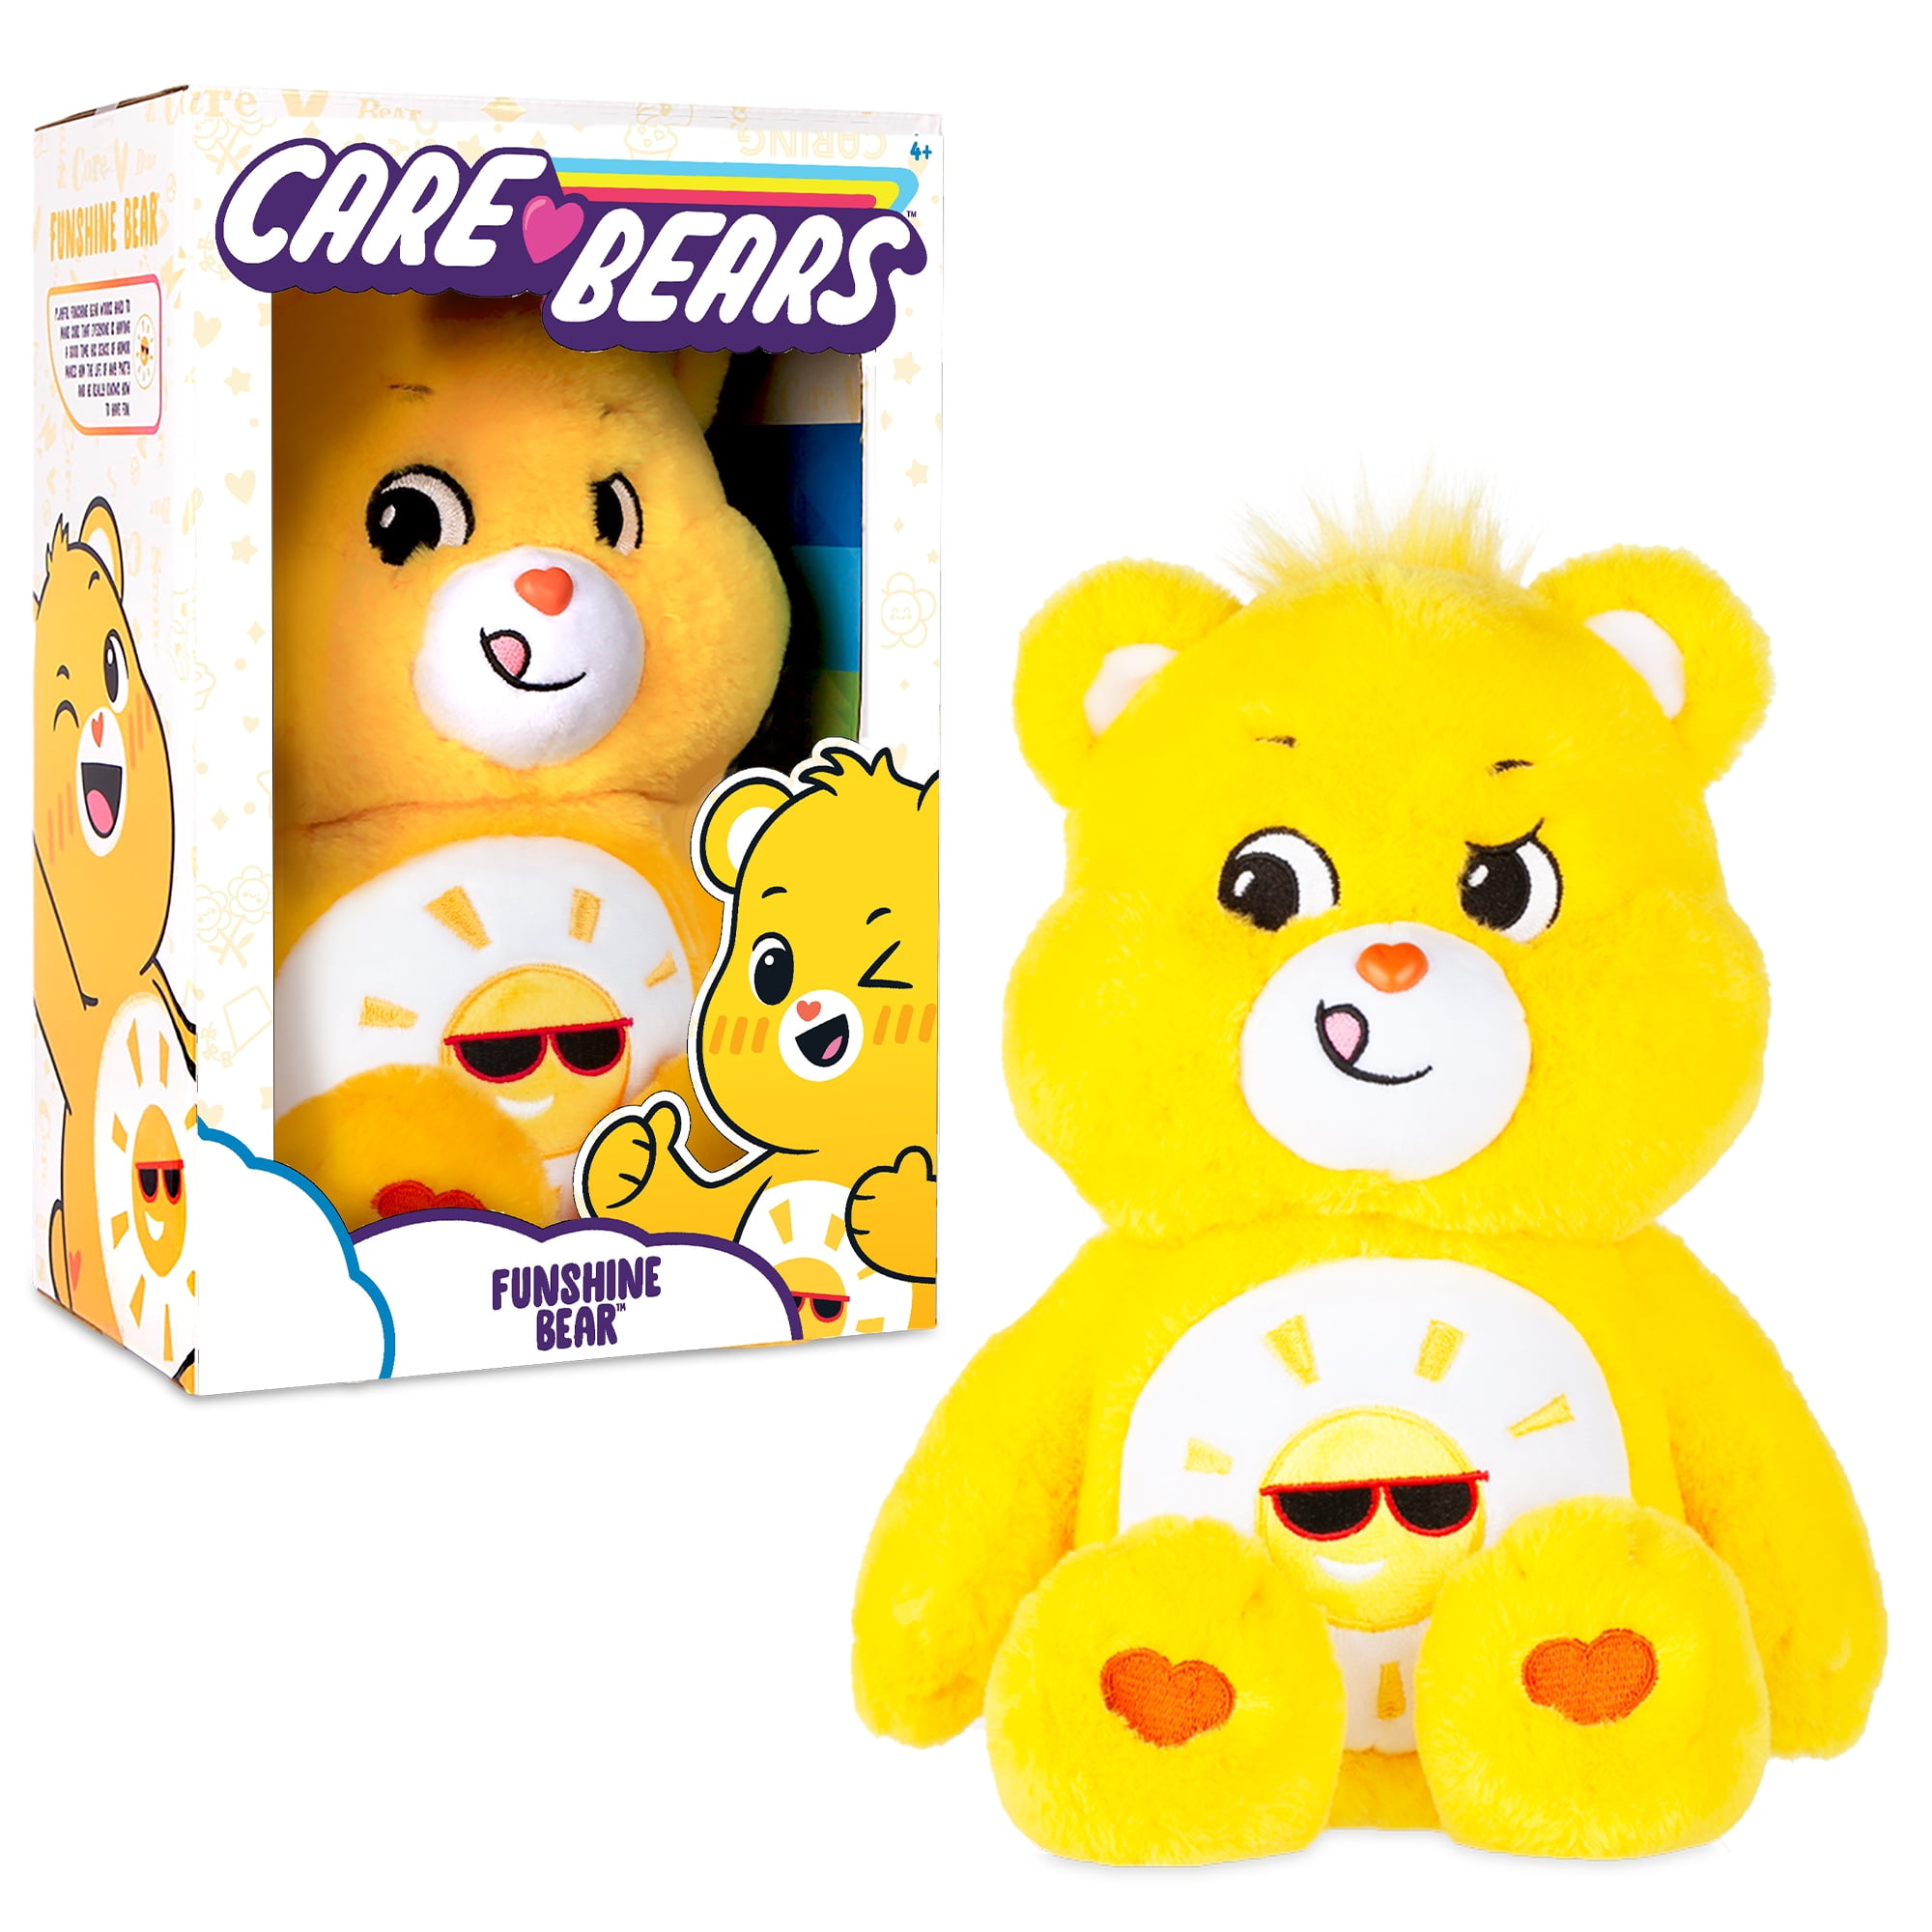 Care Bears 14” Medium-Plush Tenderheart Bear for sale online 